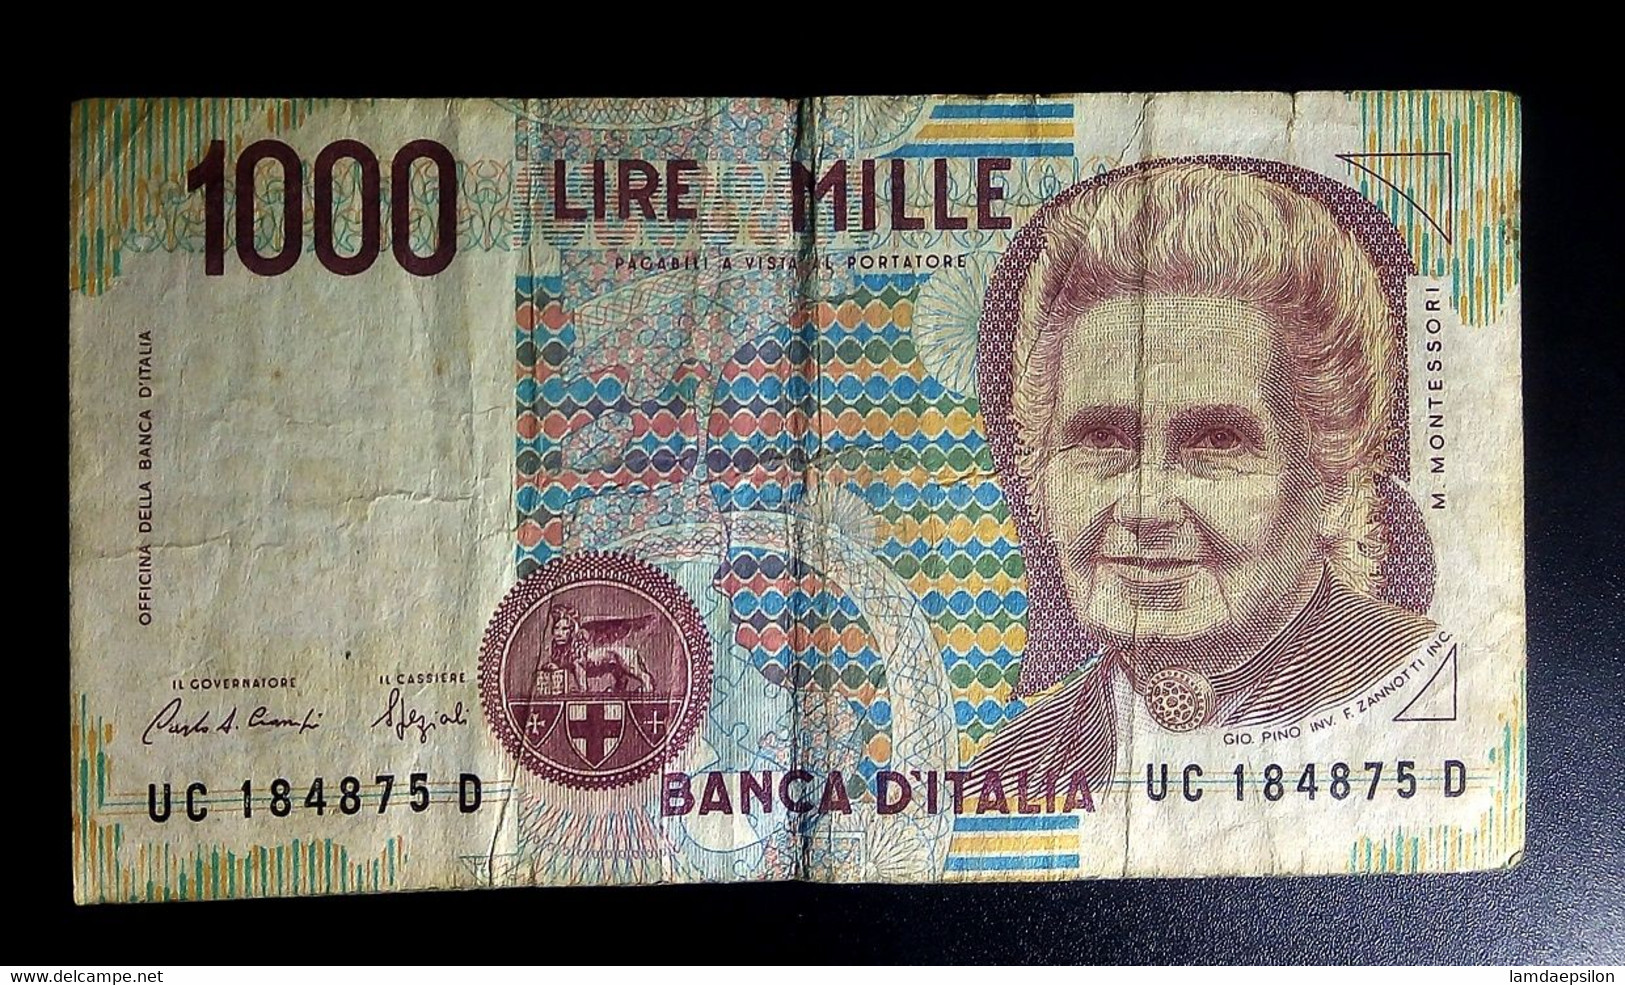 A7  ITALIE   BILLETS DU MONDE   ITALIA  BANKNOTES  1000  LIRE 1990 - [ 9] Sammlungen